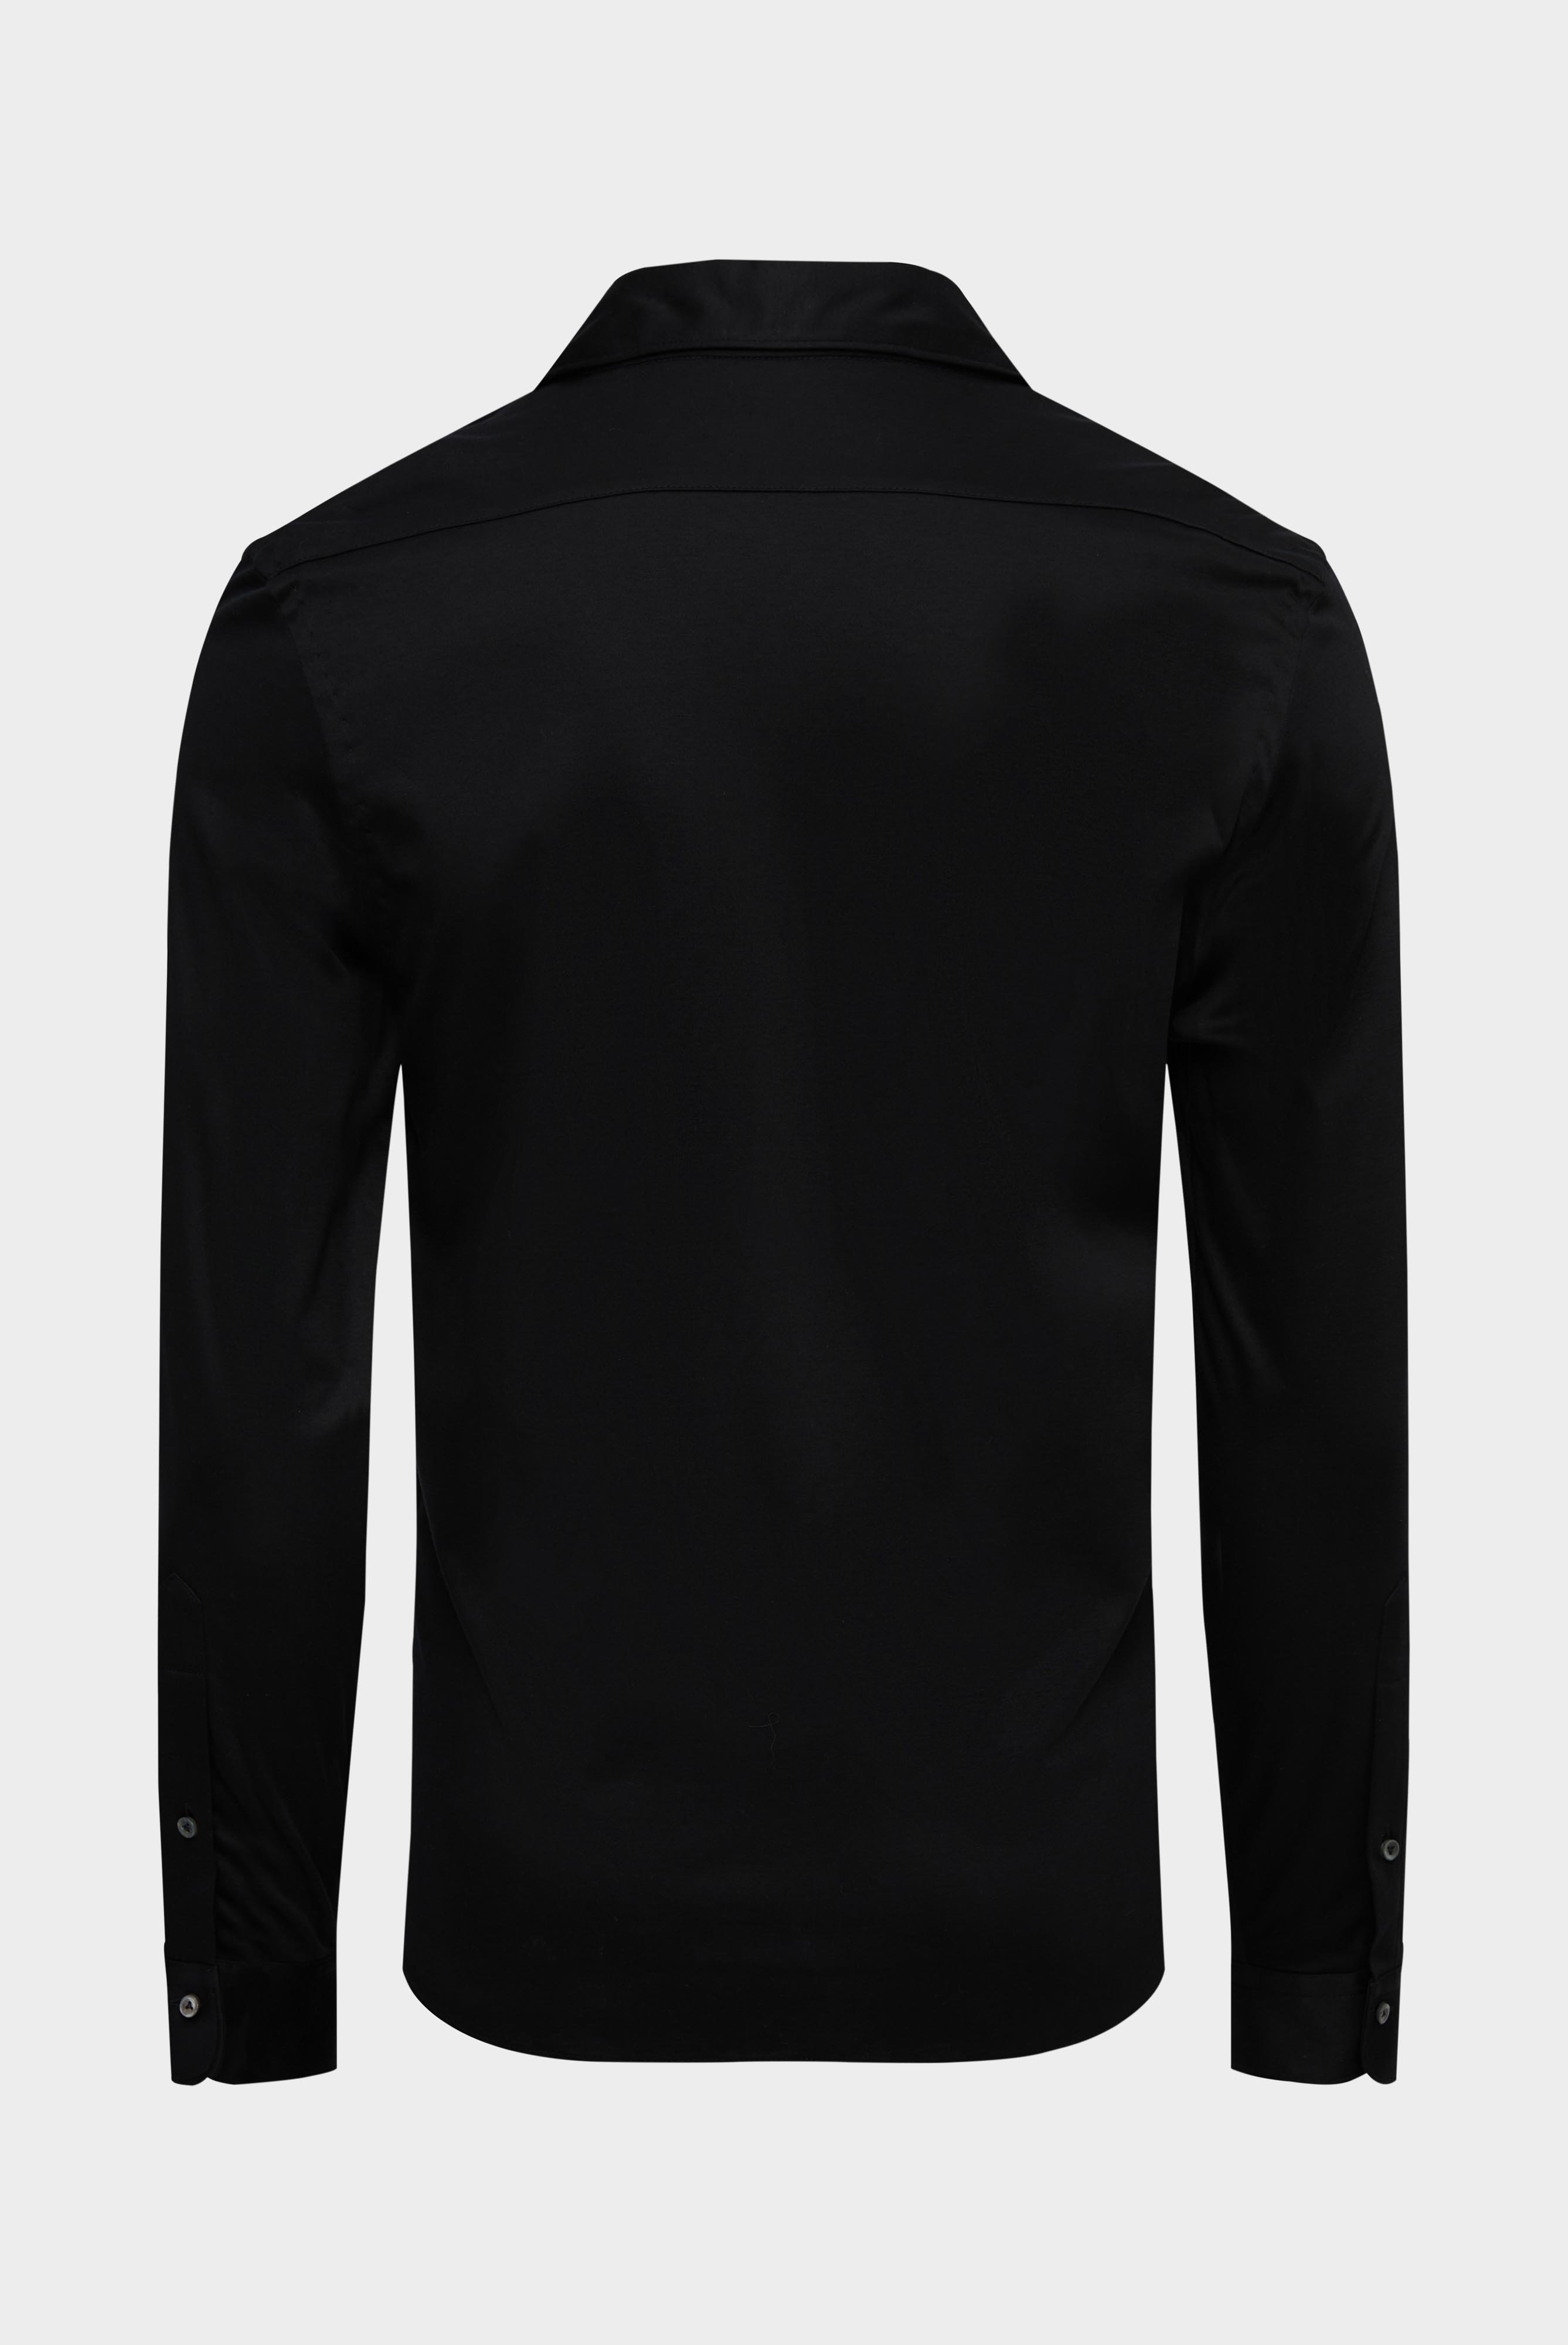 Jersey Hemden+Jersey Hemd aus Schweizer Baumwolle Slim Fit+20.1682.UC.180031.099.XL